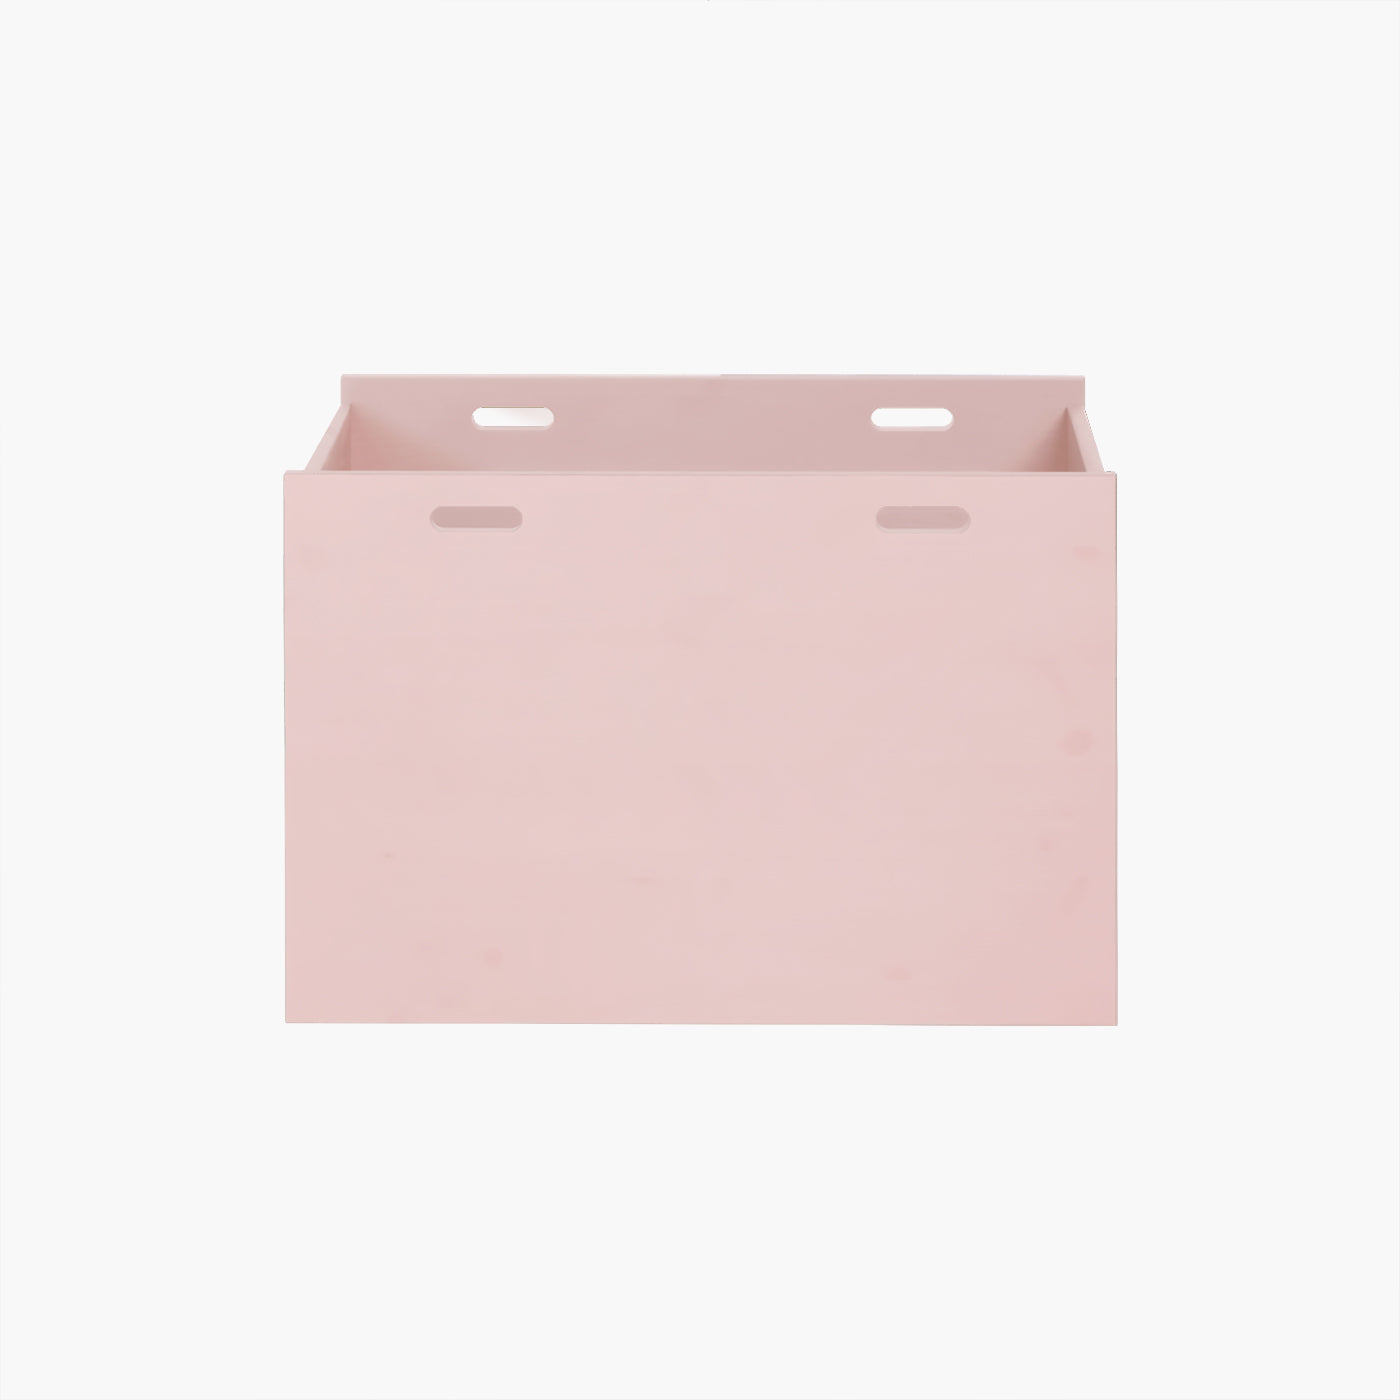 Dana opbevaringskasse - Blush | Vælg mellem 30 cm eller 40 cm i dybden.